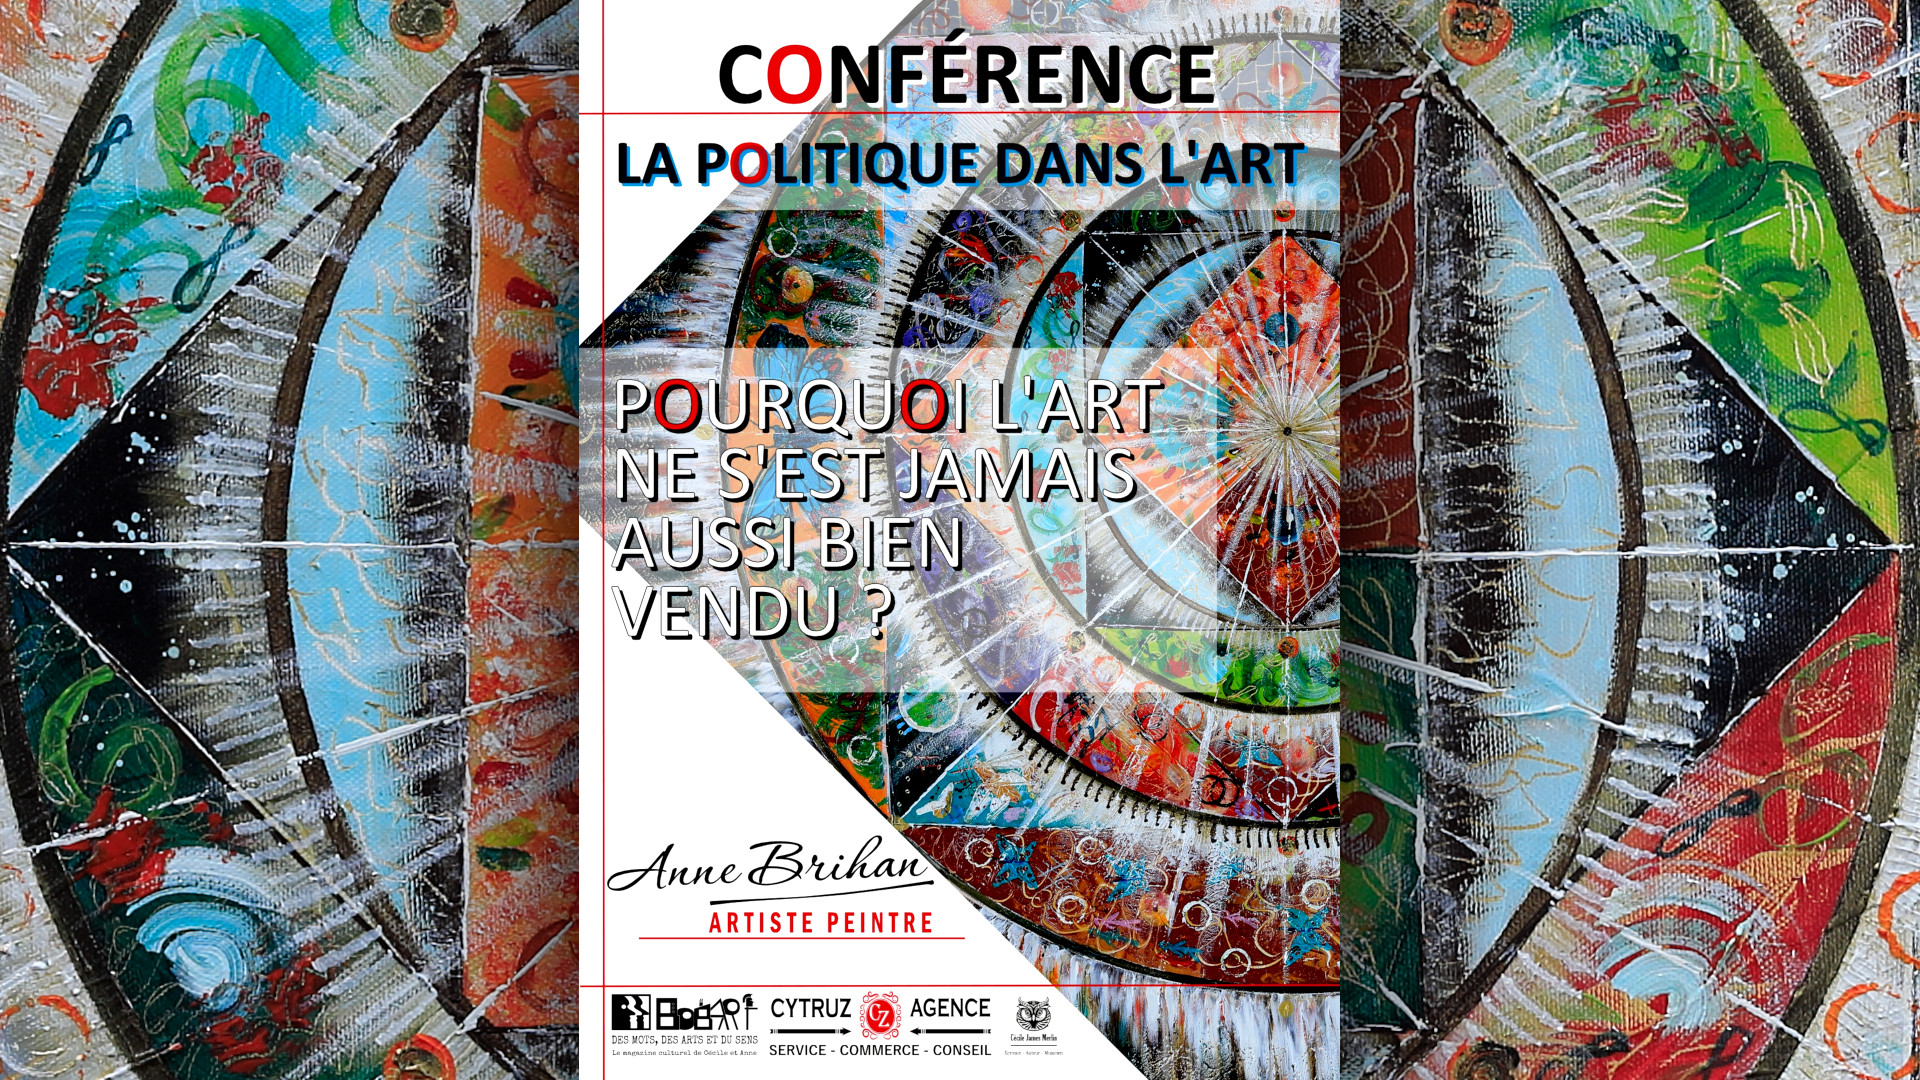 Conférences politique dans l'art par l'artiste peintre Anne Brihan  landes aquitaine<br />
France